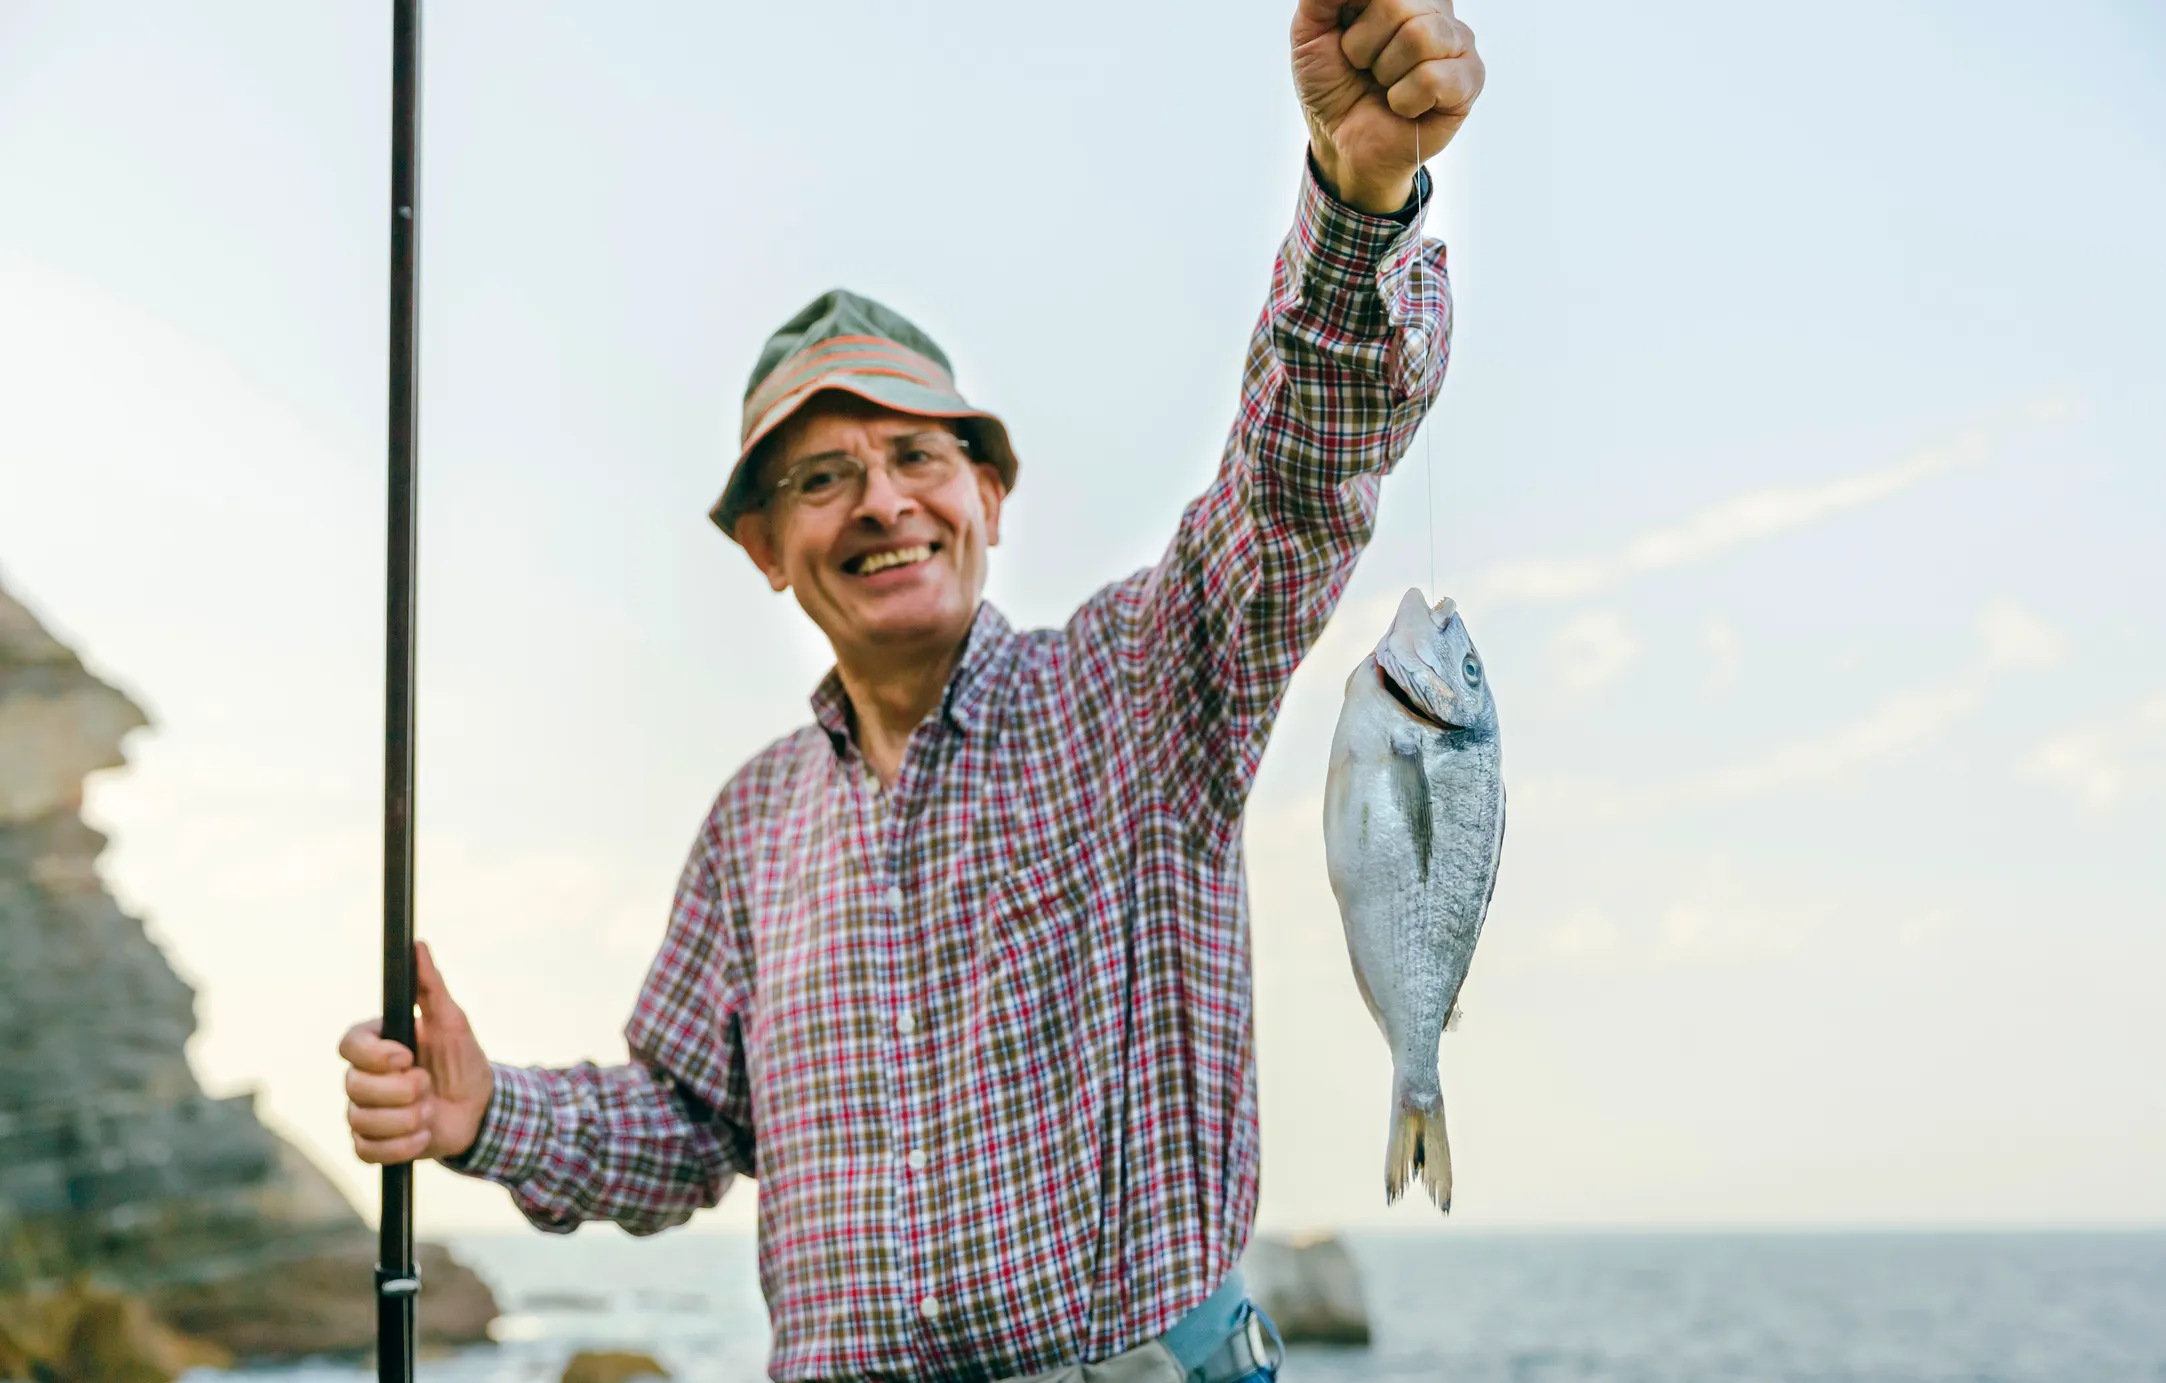 Фото мужчин с рыбой в руках